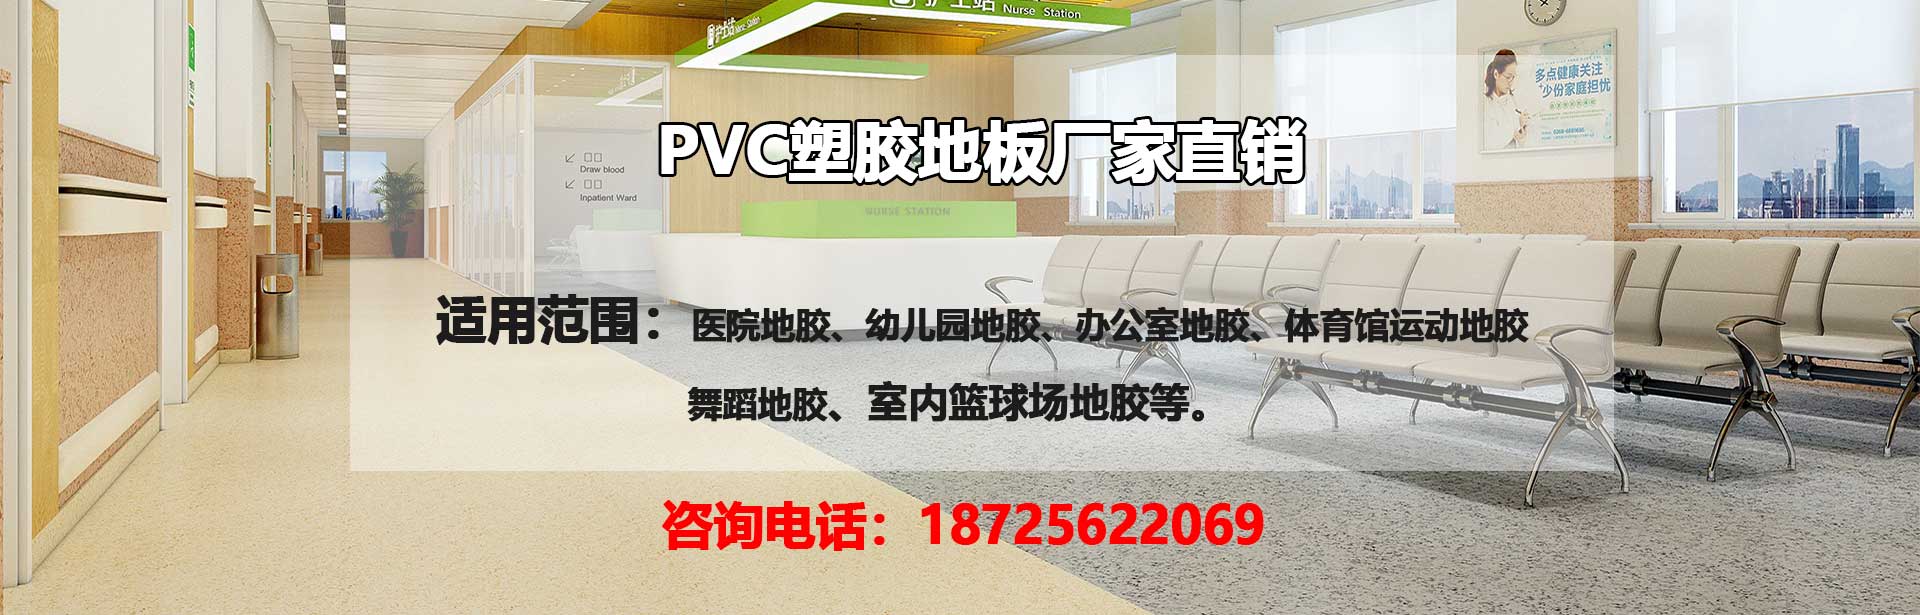 PVC塑胶地板厂家PVC塑胶地板